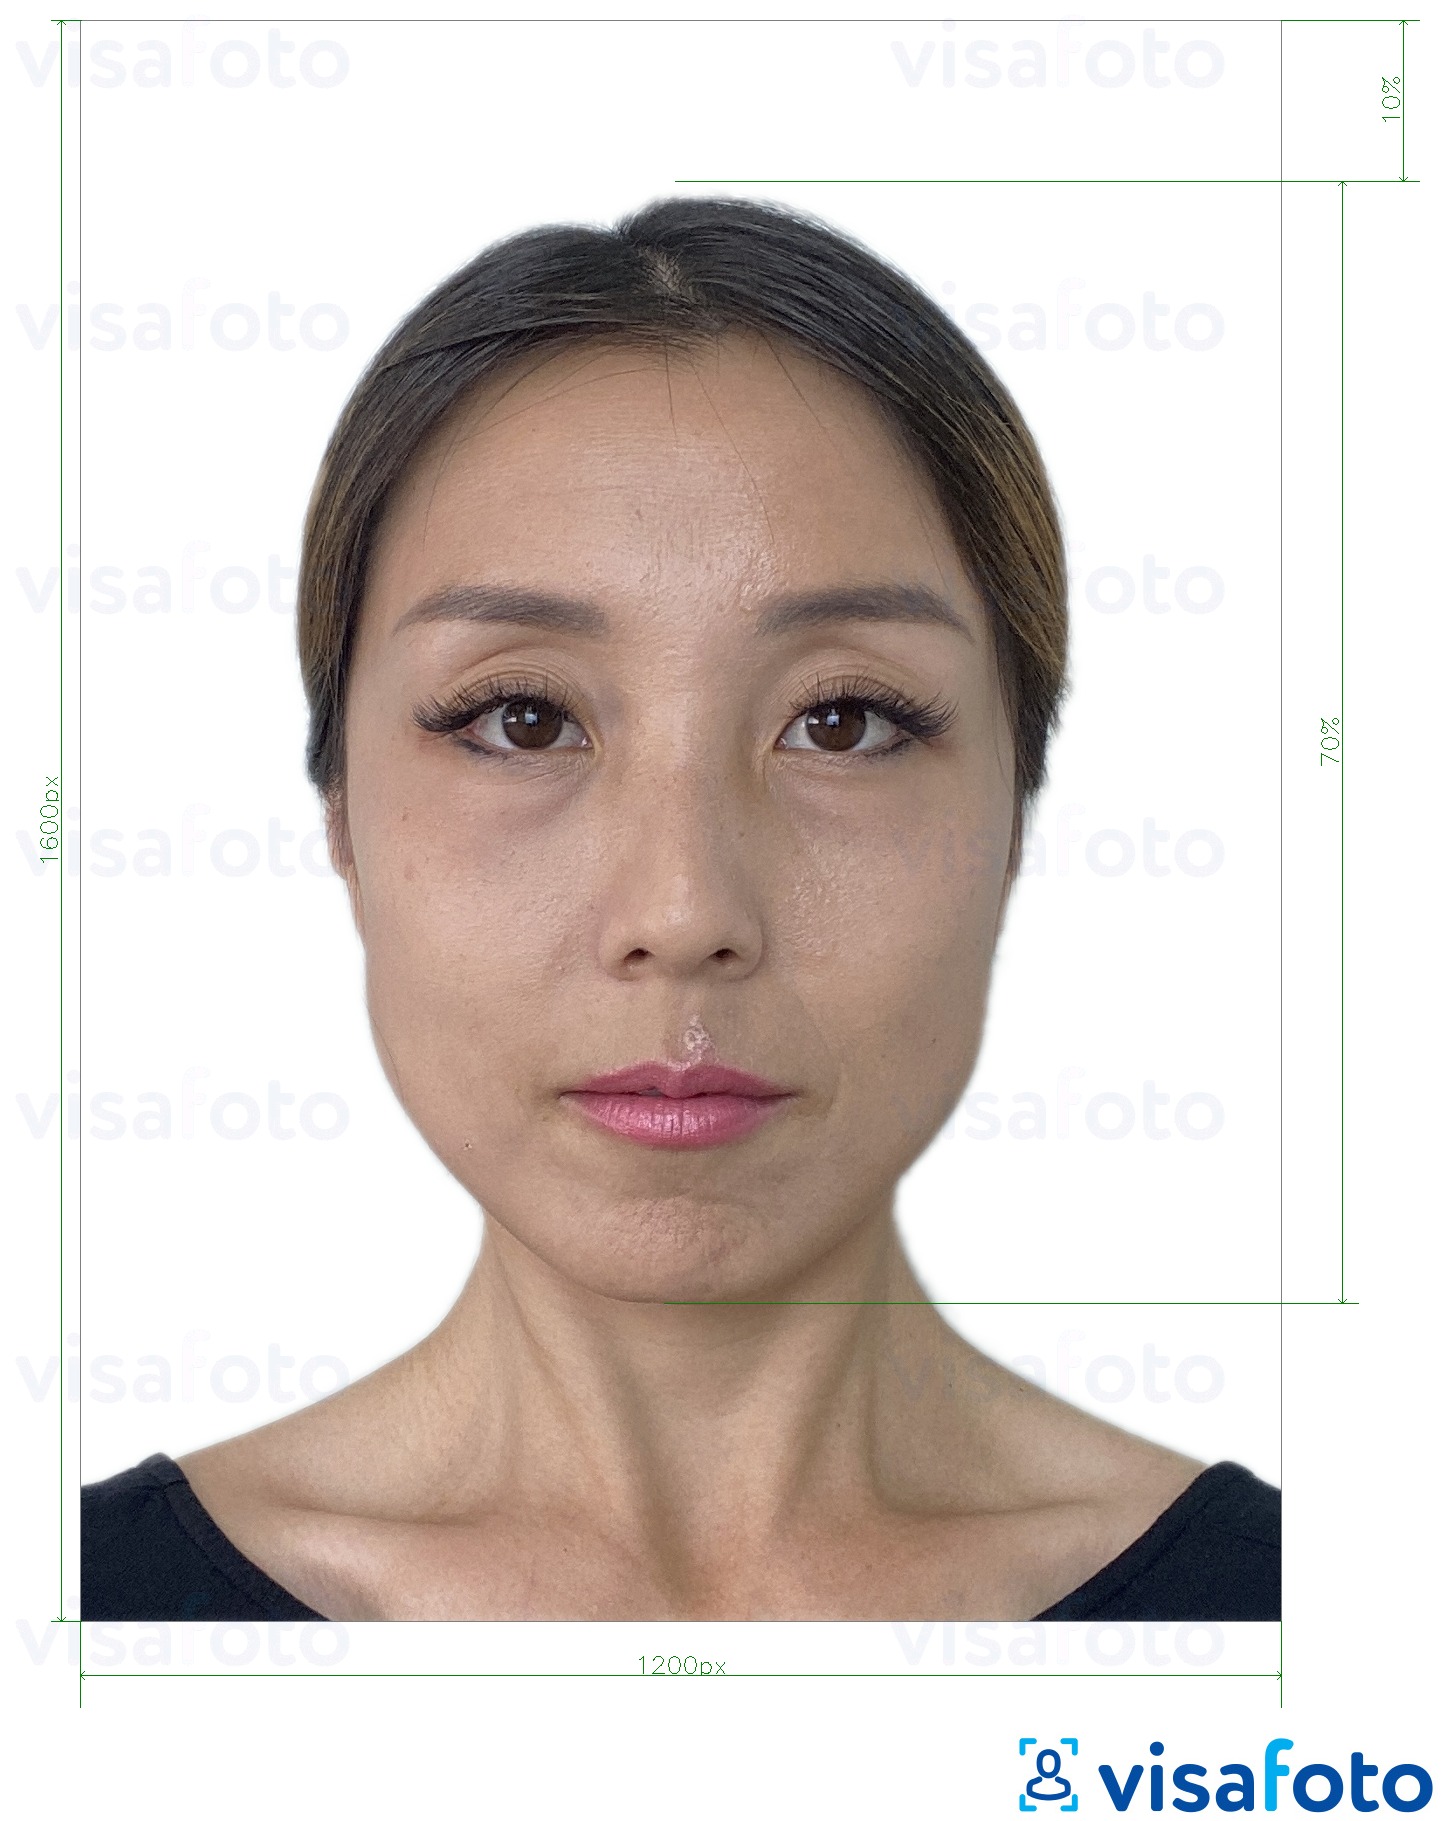 Приклад фотографії для Гонконг онлайн електронна віза 1200x1600 пікселів з точними специфікаціями розміру